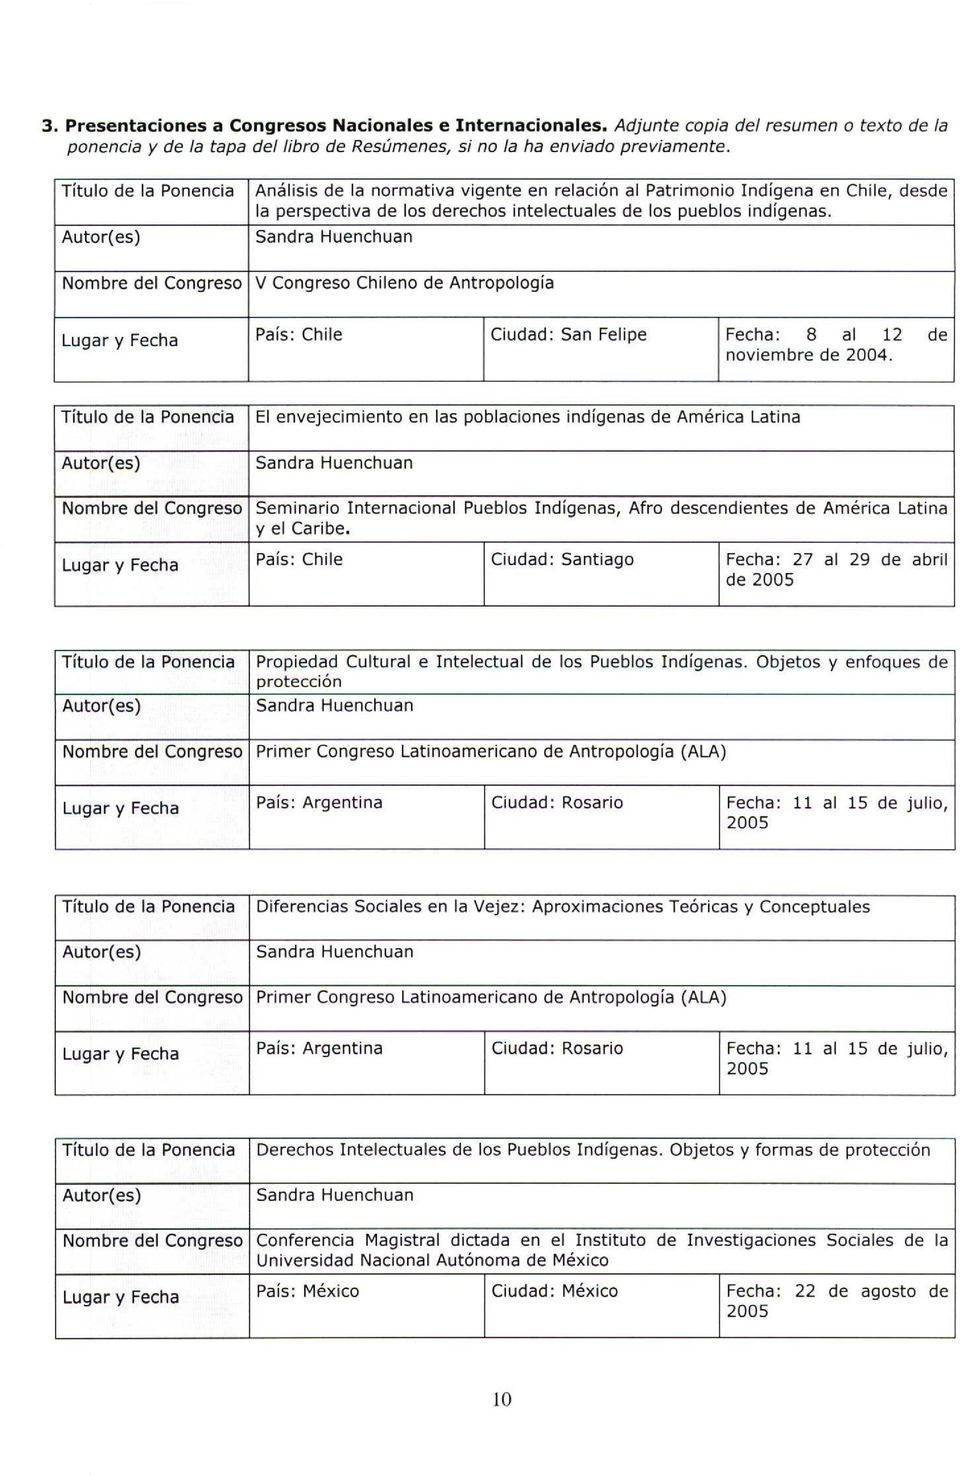 V Congreso Chileno de Antropología Lugar y Fecha País: Chile Ciudad: San Felipe Fecha: 8 al 12 de noviembre de 2004.